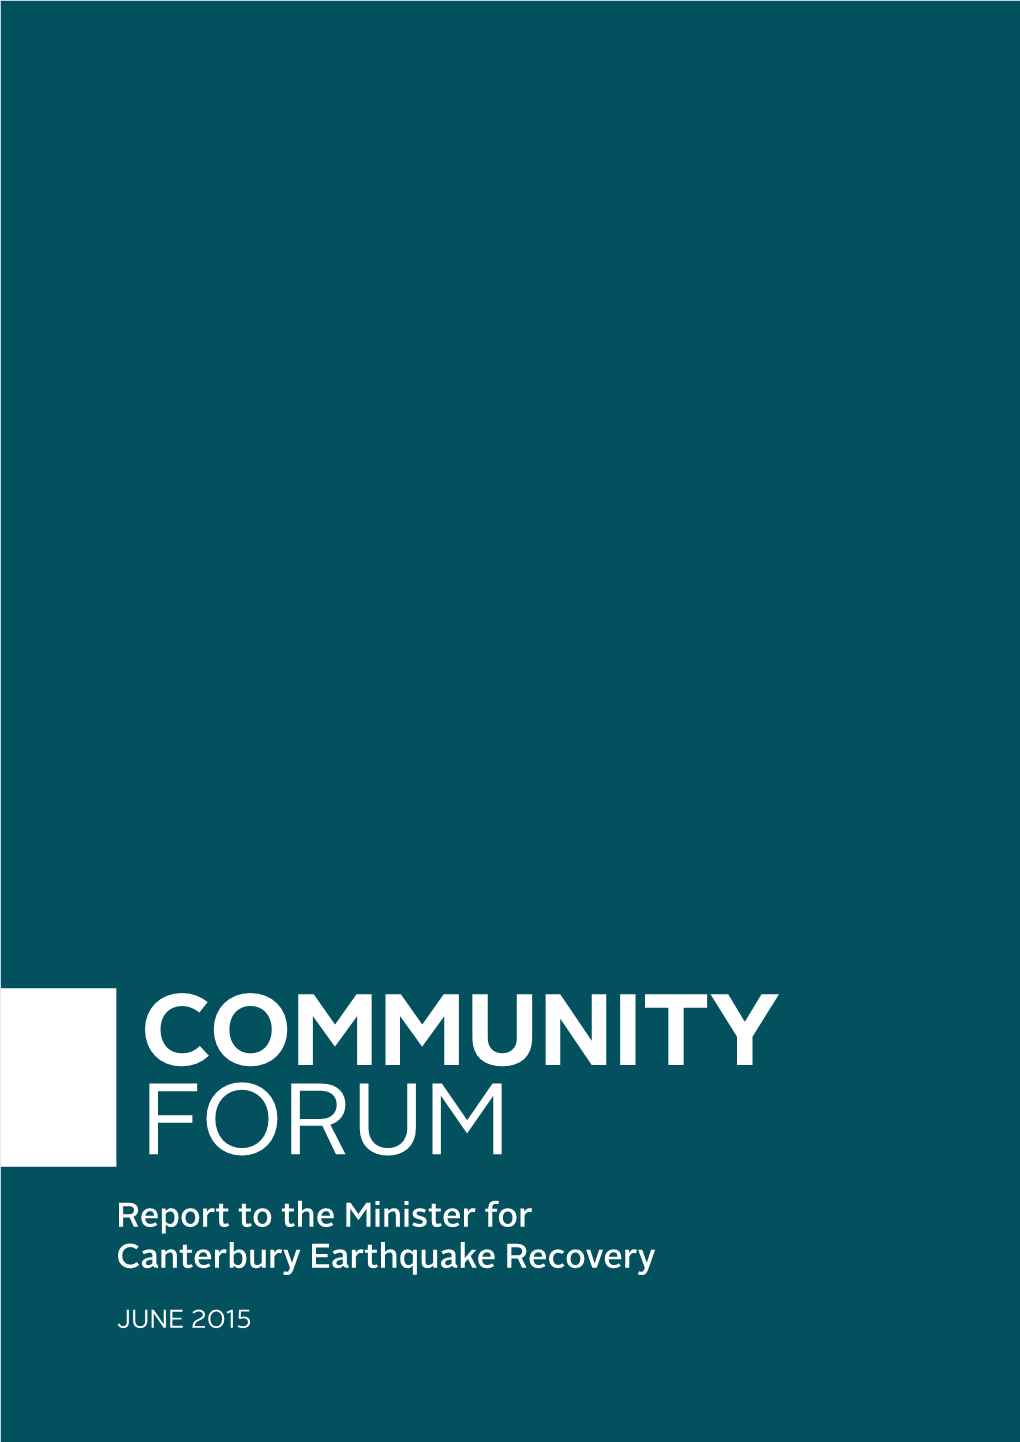 Community Forum Report June 2015